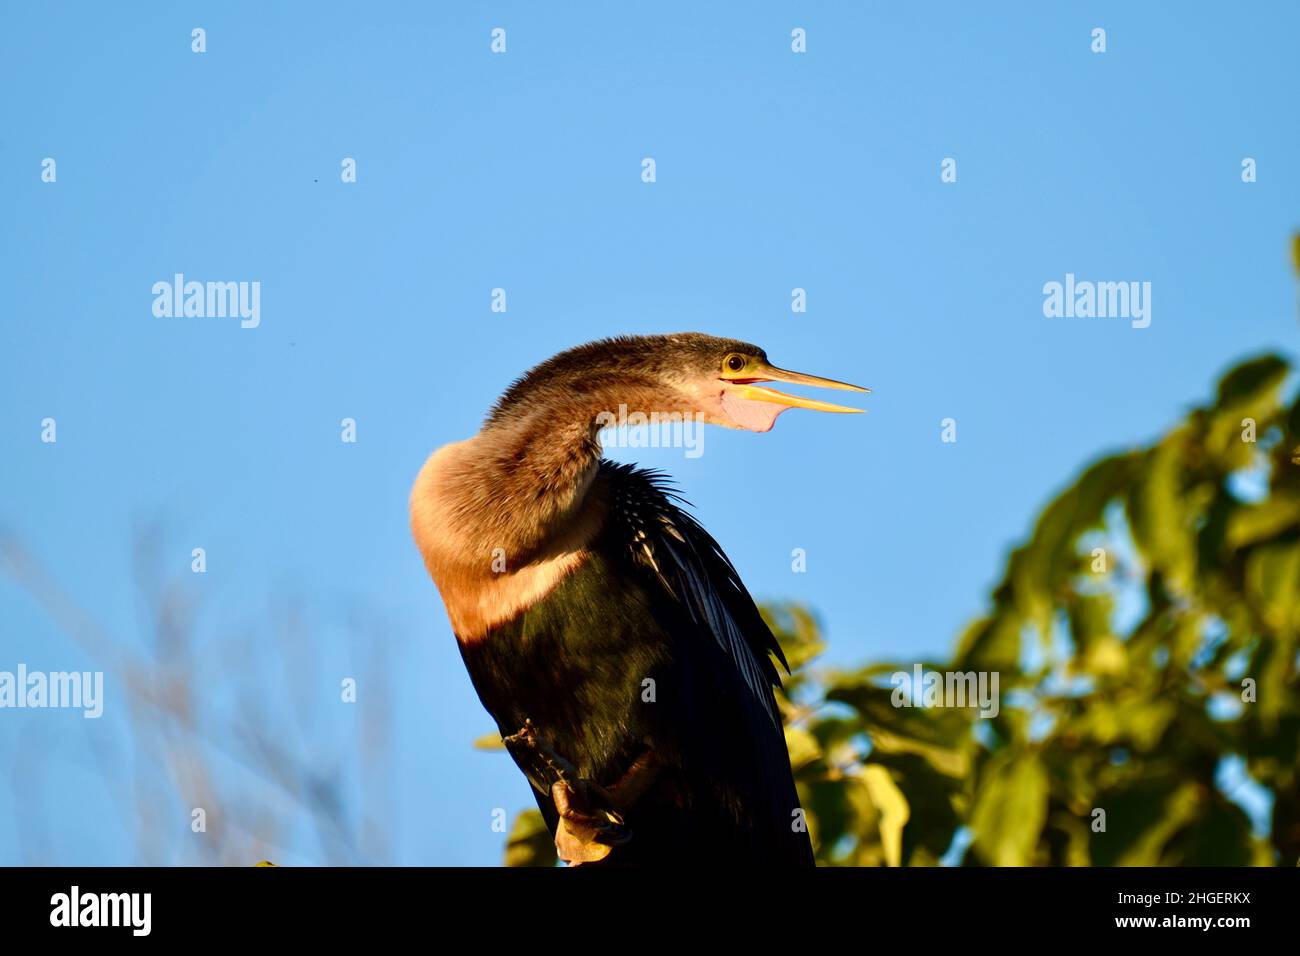 Anhinga (Anhinga anhinga), auch bekannt als Schlangenkäfer, amerikanischer Darter oder wassertürke, mit seinem Kehlsack deutlich sichtbar, im Mangroven von San Pedro, Belize. Stockfoto